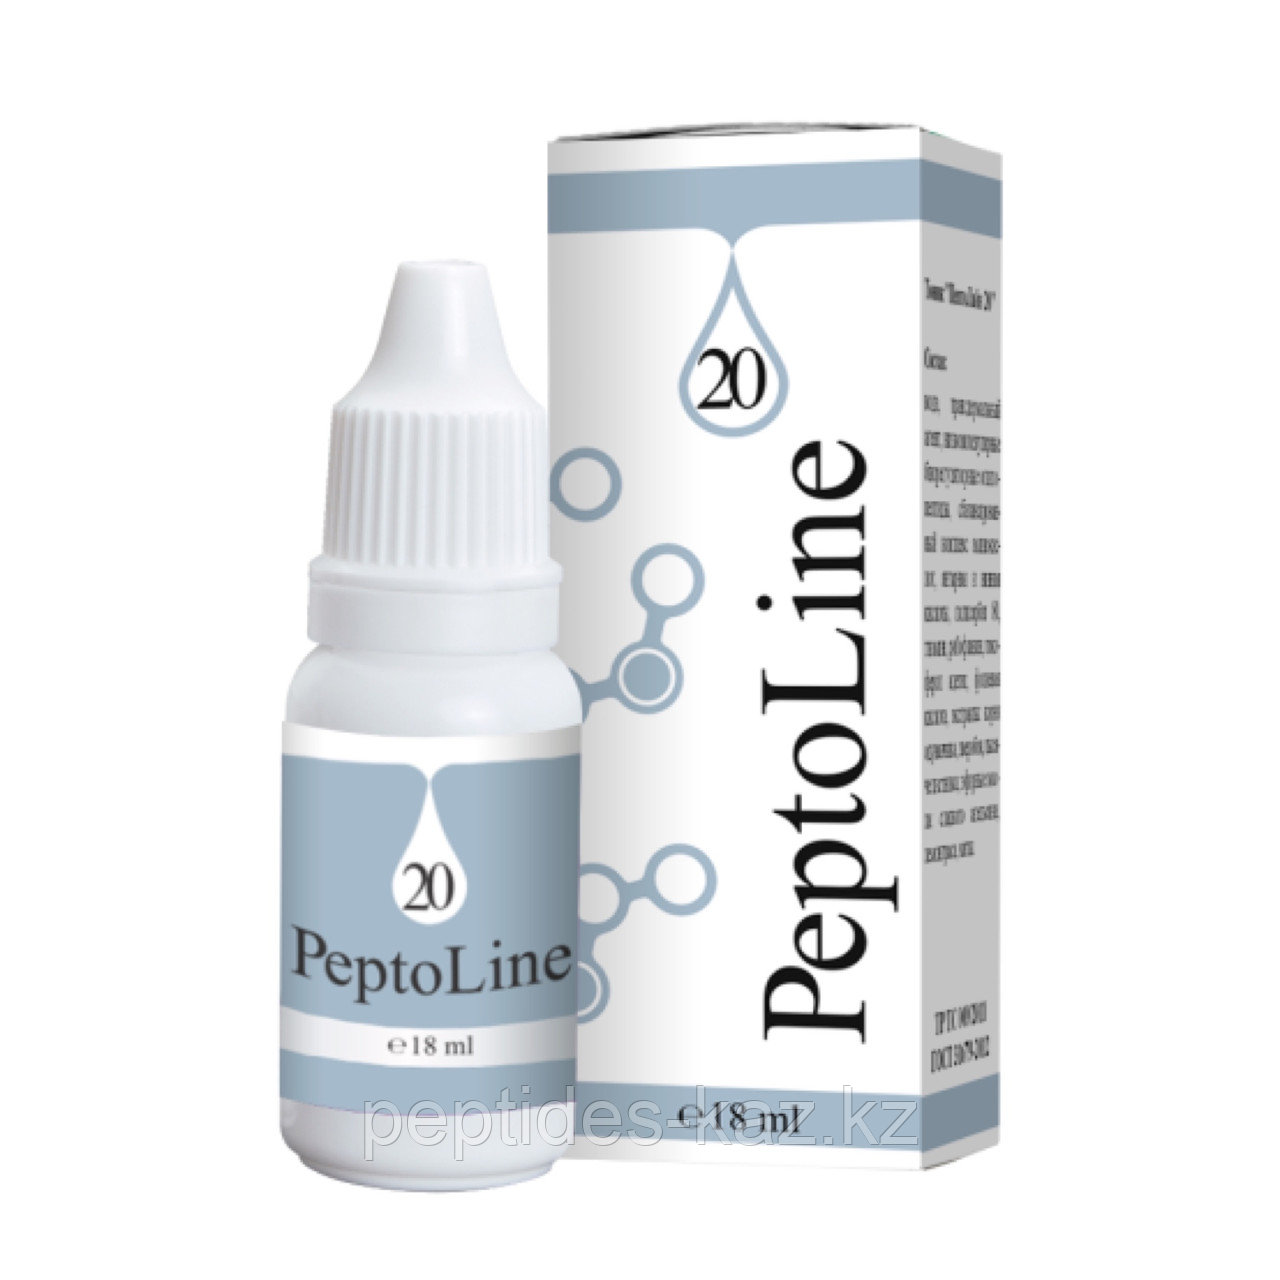 PeptoLine 20 для детоксикации, пептидный комплекс 18 мл